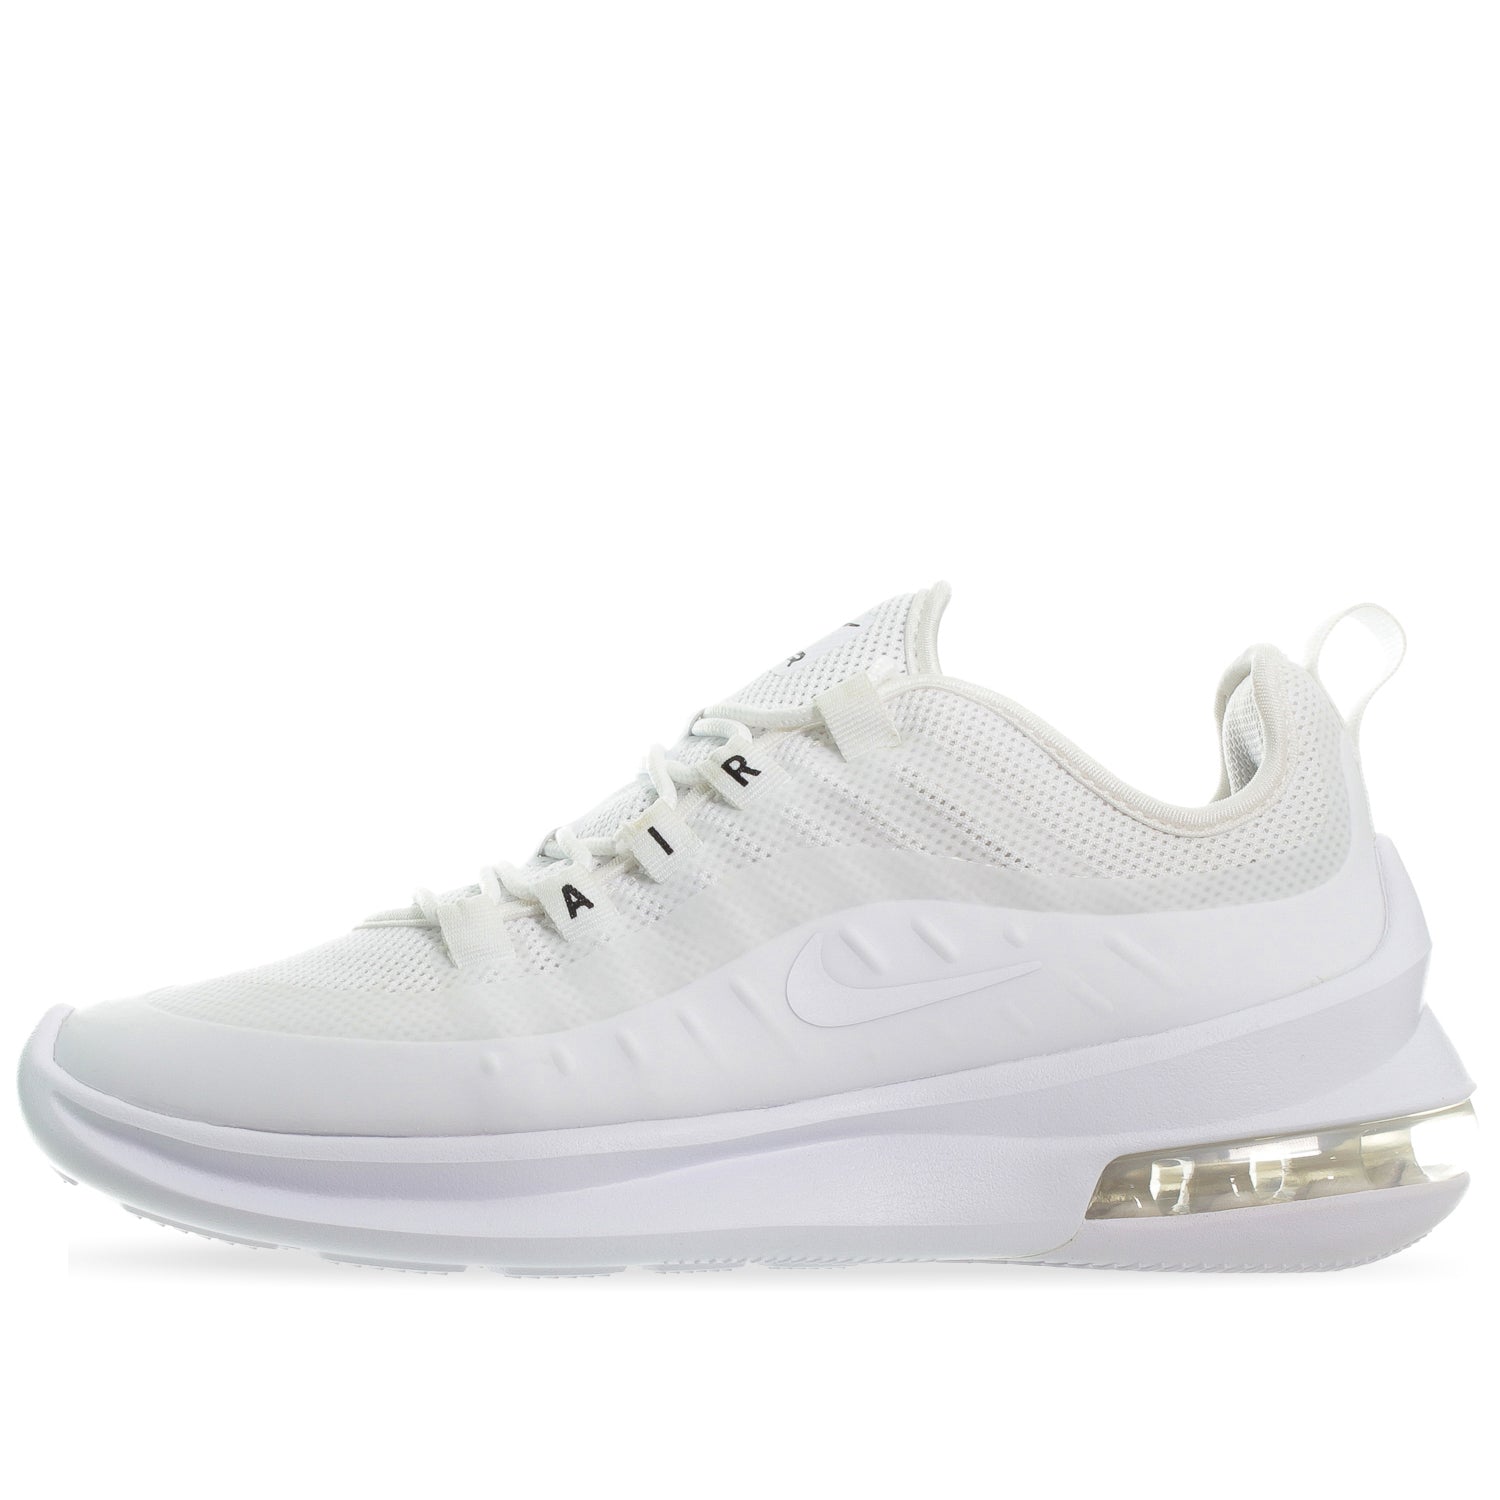 Tenis Nike Air Max Axis - AA2168100 - Blanco - Mujer | Shoelander.com -  Footwear Retail